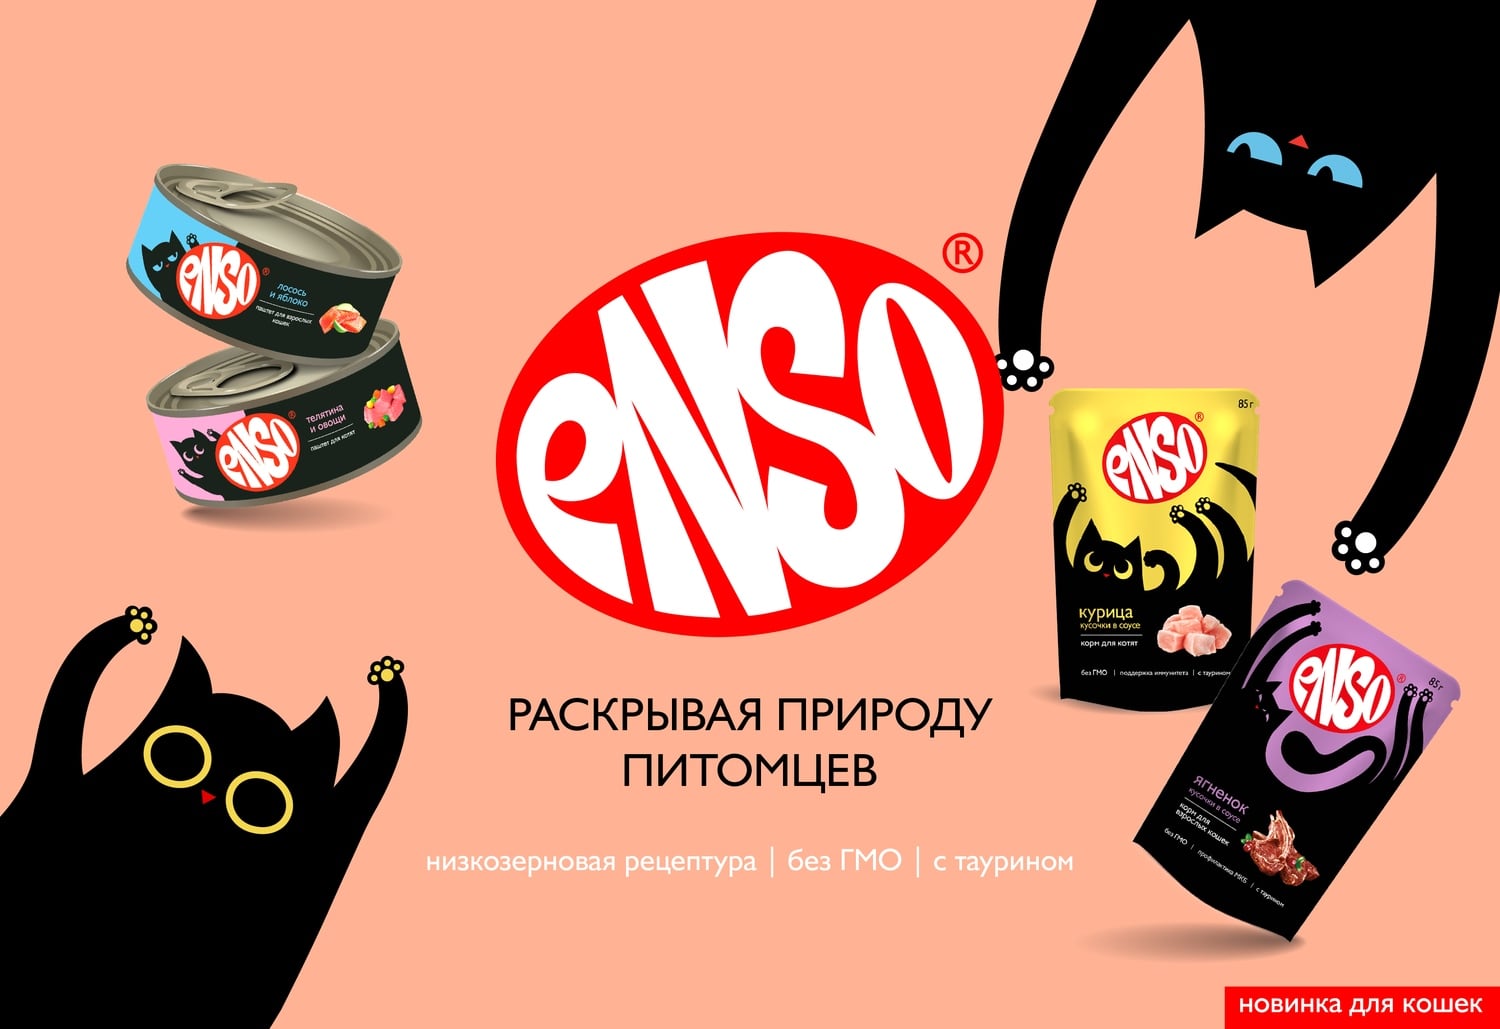 купить корма для кошек Энсо с бесплатной доставкой в Калининграде